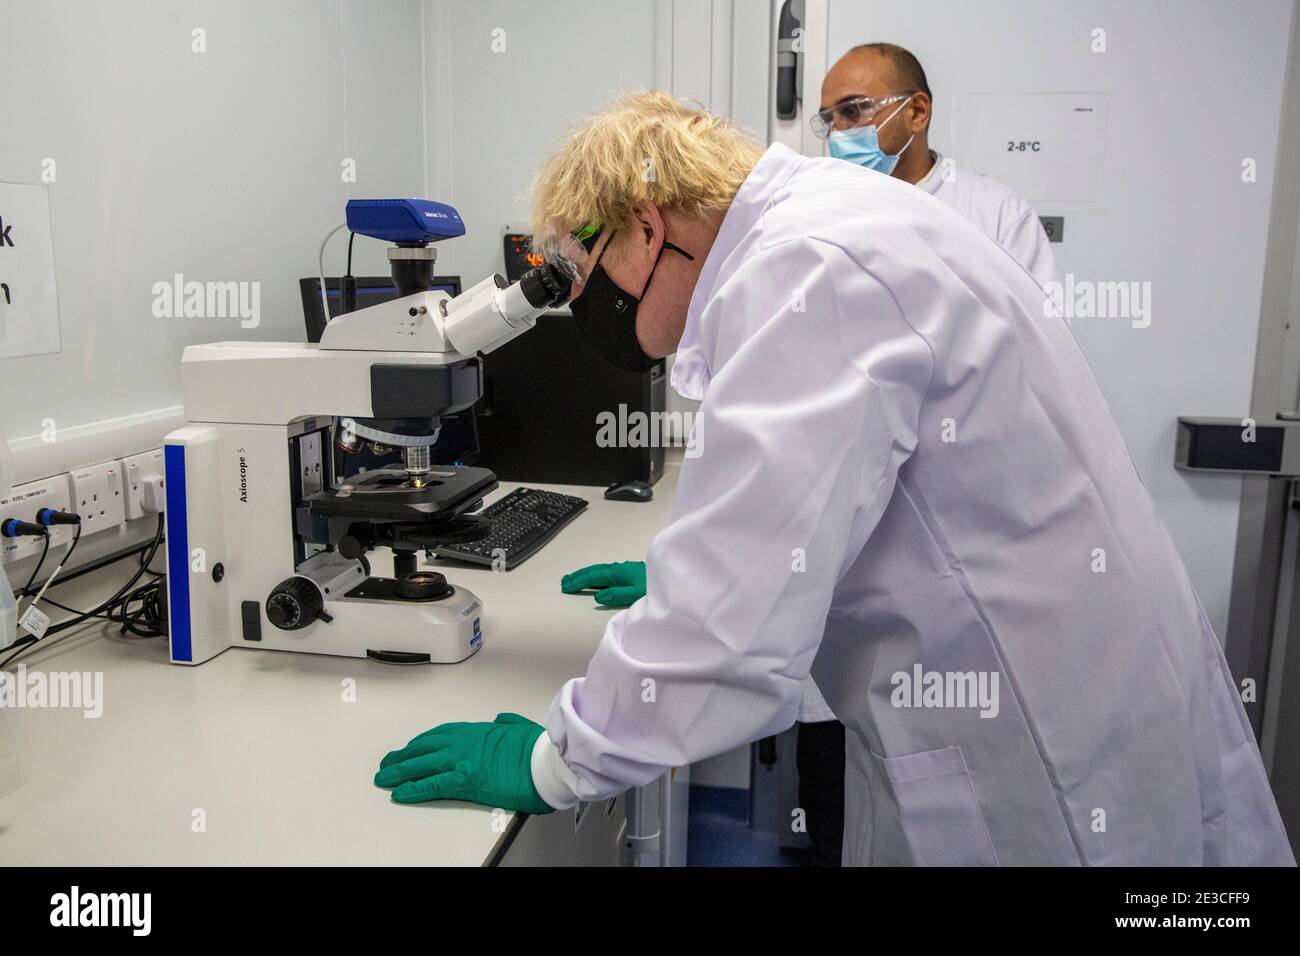 Le Premier ministre Boris Johnson examine un microscope dans le laboratoire de contrôle de la qualité, où des lots de vaccins sont testés, lors d'une visite de l'usine de fabrication du vaccin Oxford/AstraZeneca à Oxford Biomedica dans l'Oxfordshire. Date de la photo: Lundi 18 janvier 2021. Banque D'Images